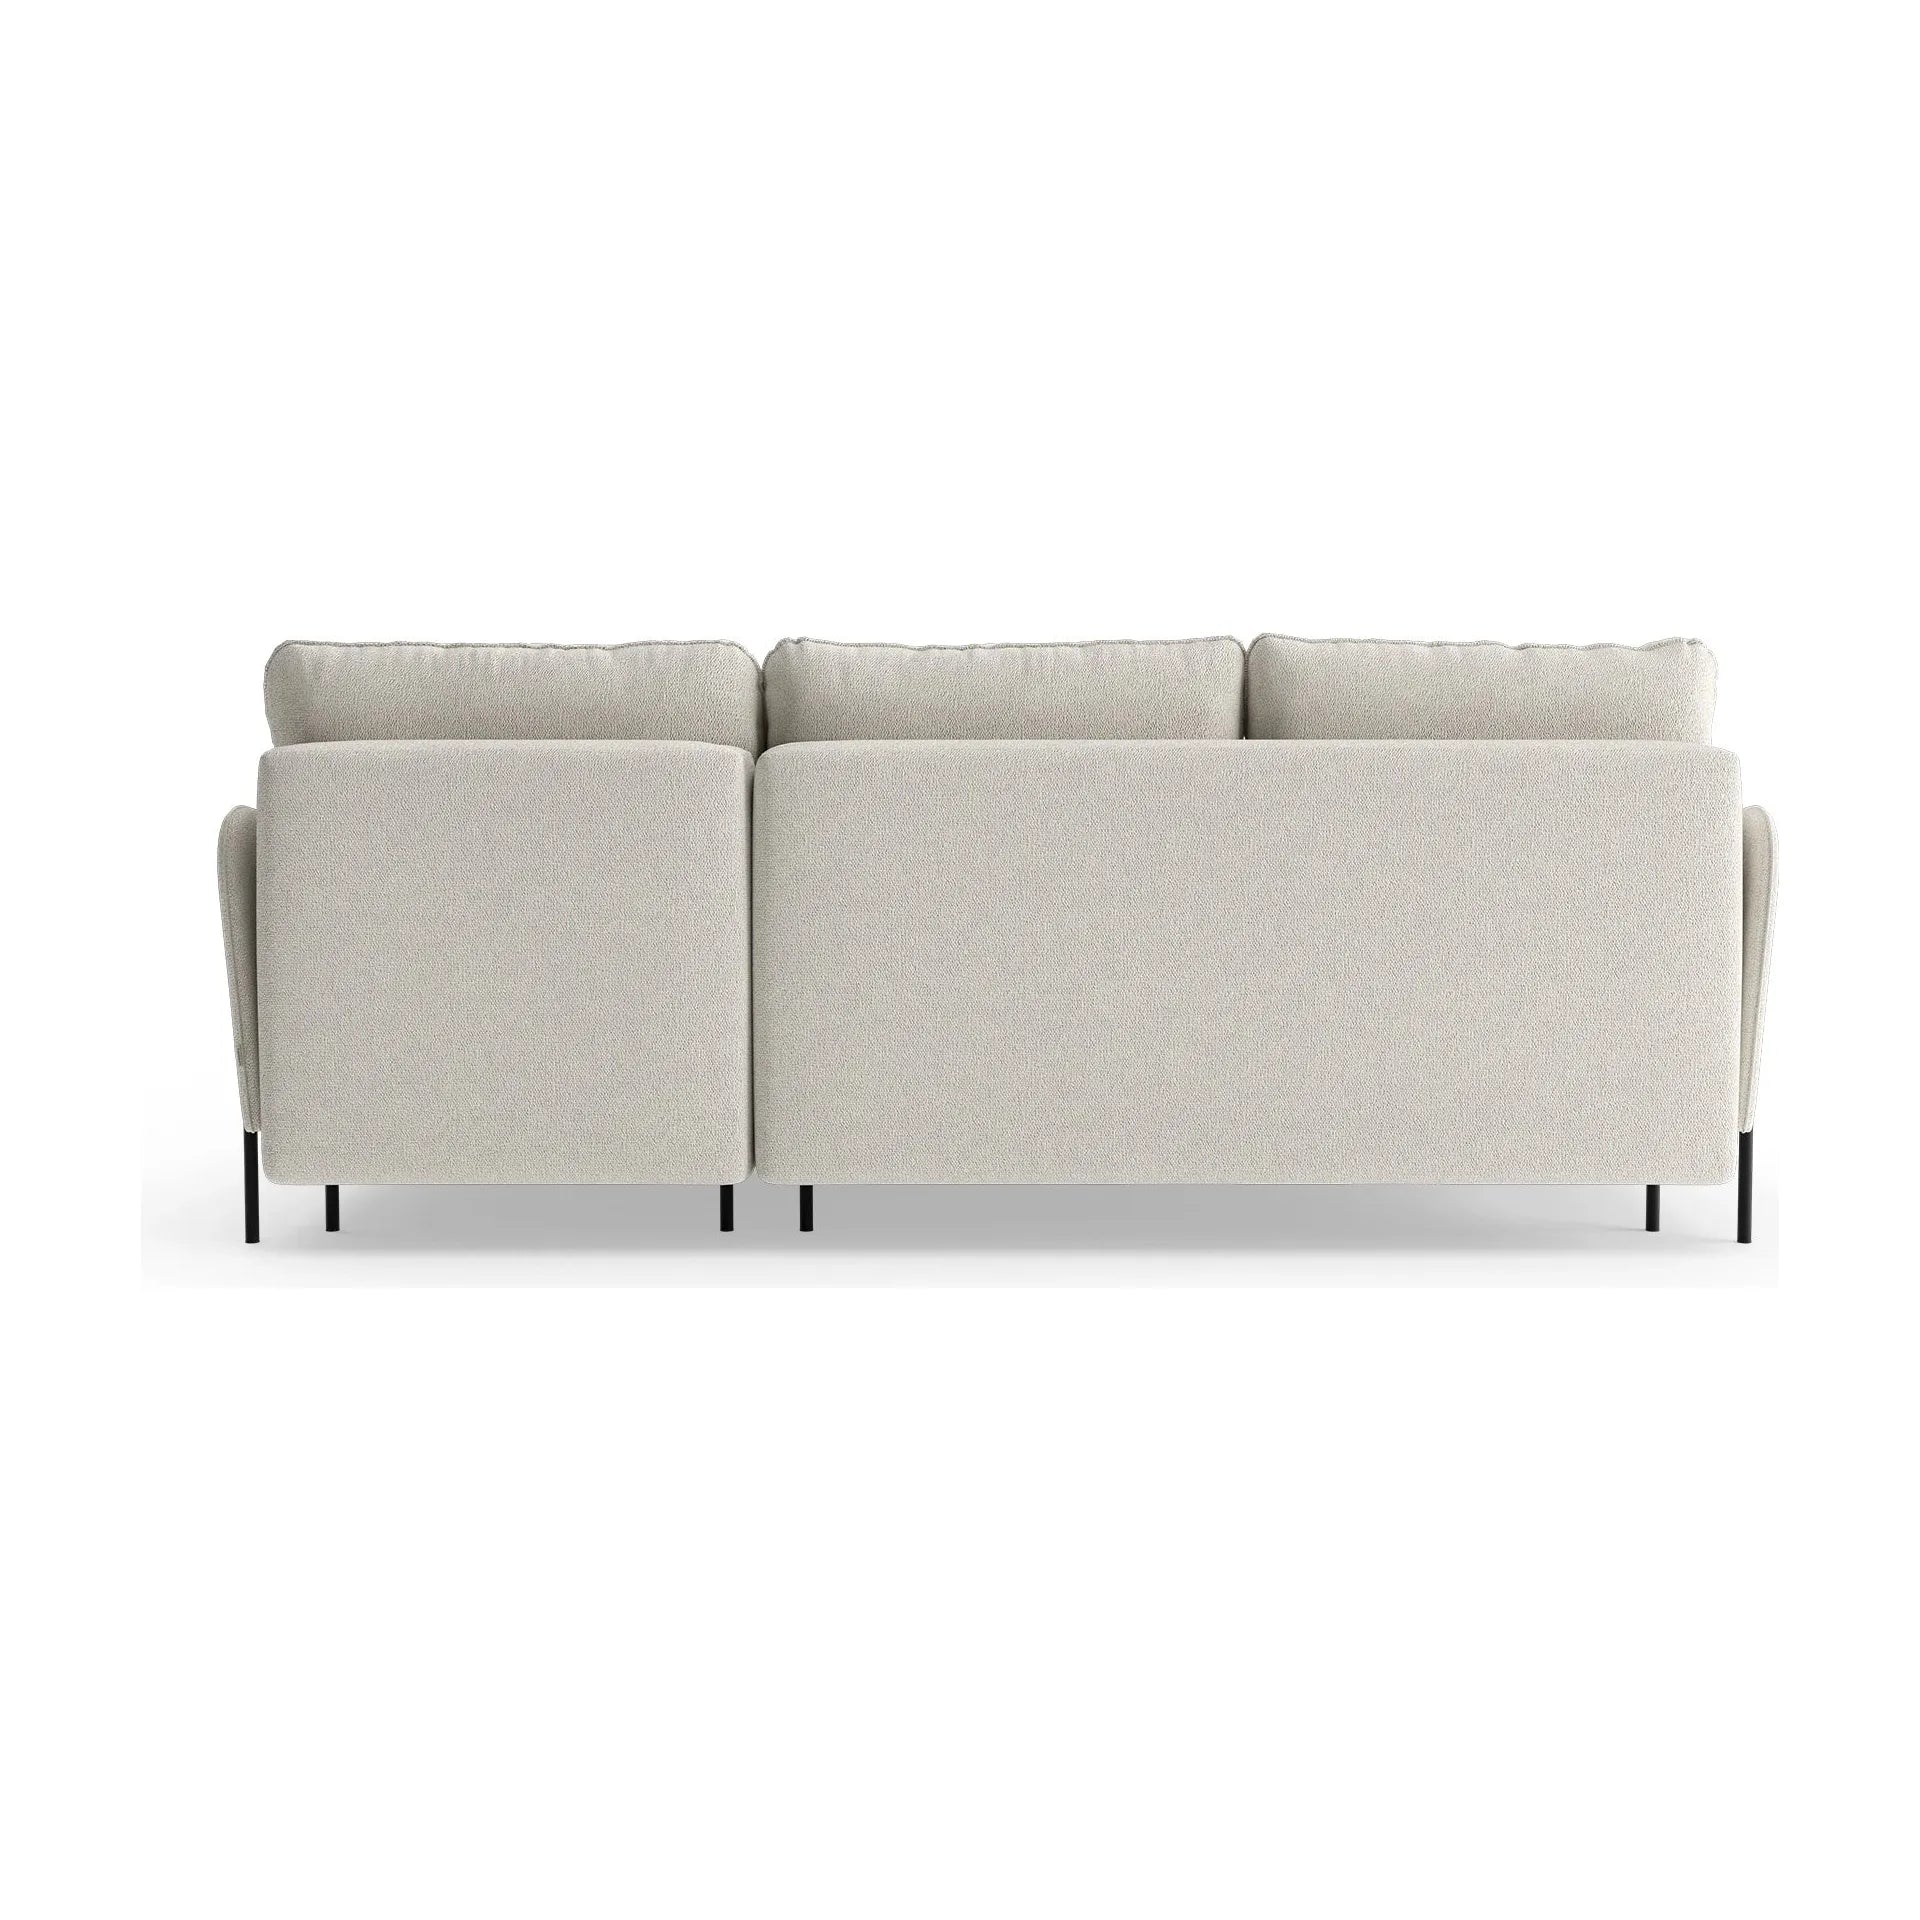 BONNIE kampinė sofa, miegojimo funkcija, kreminė spalva